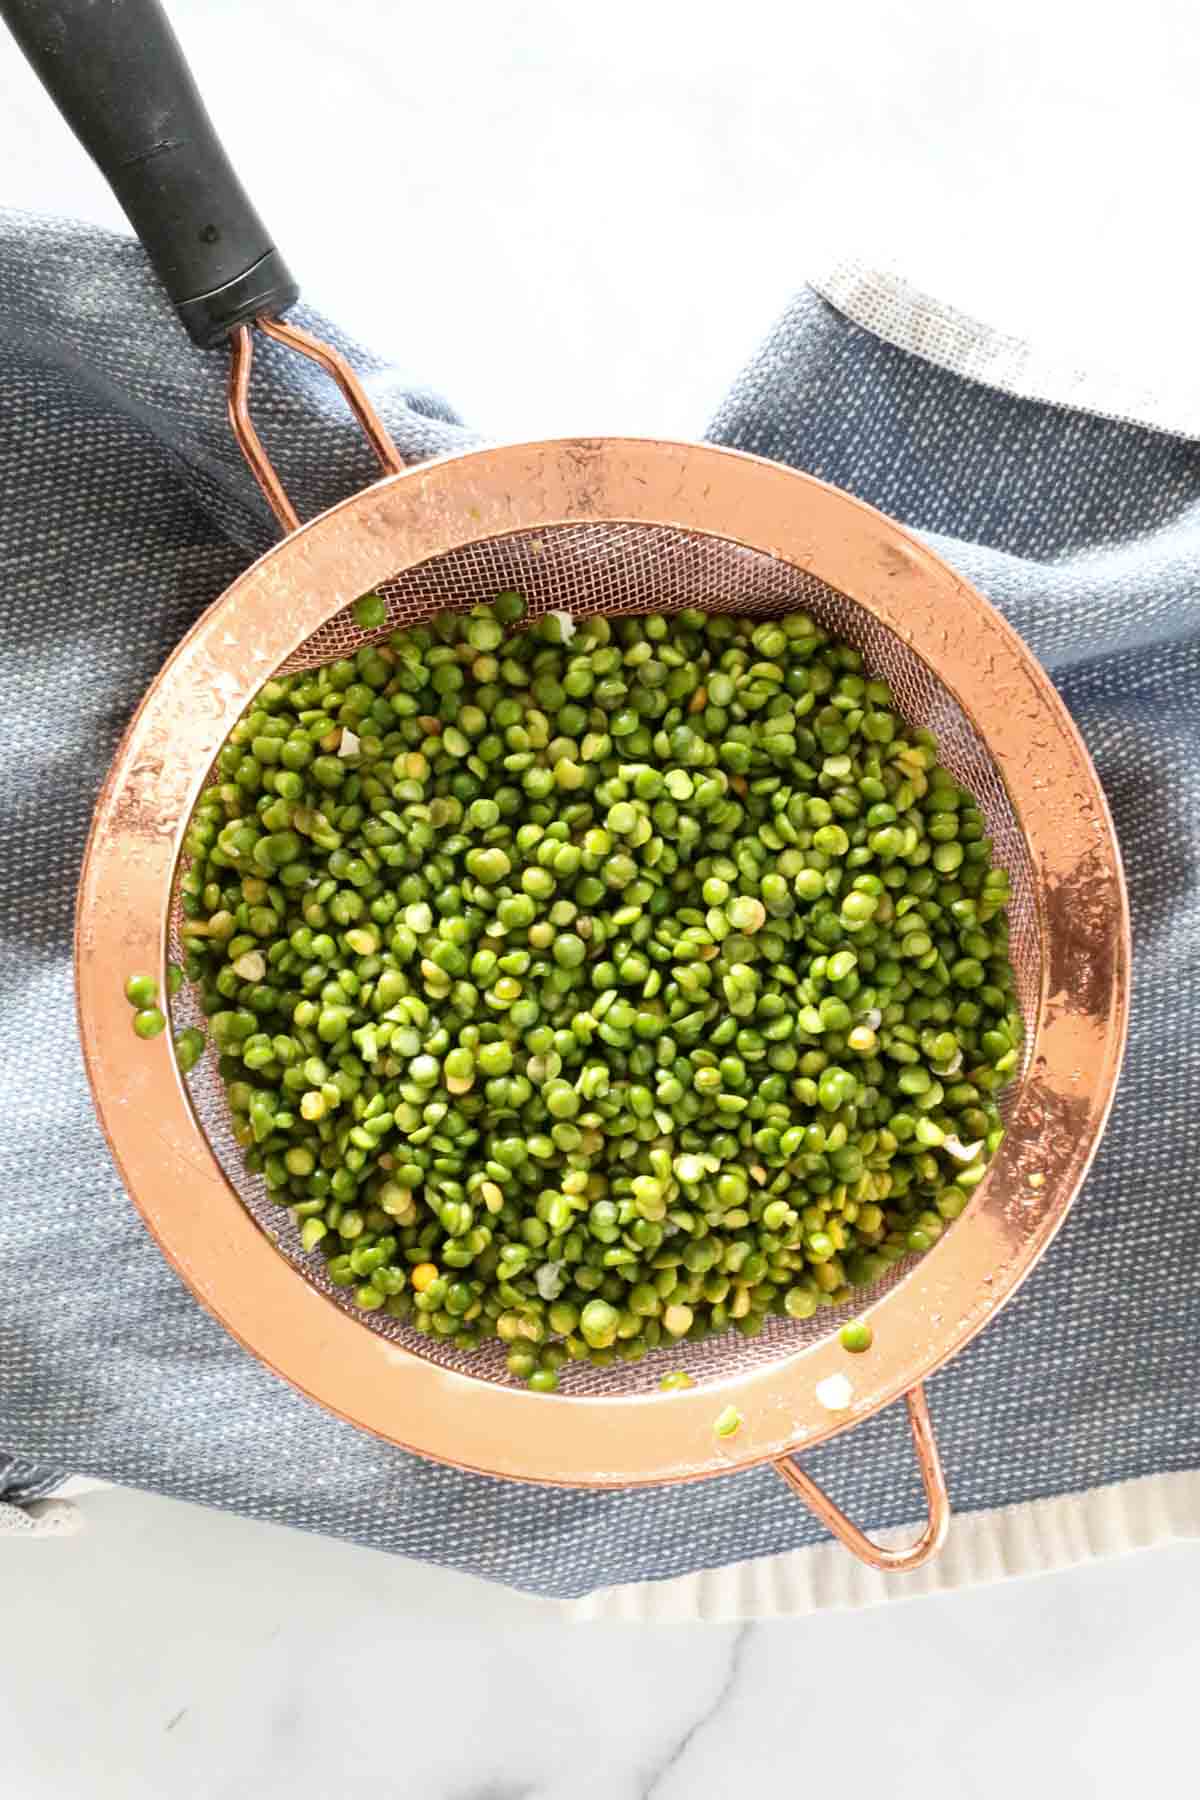 Rinsing split peas in a copper sieve.